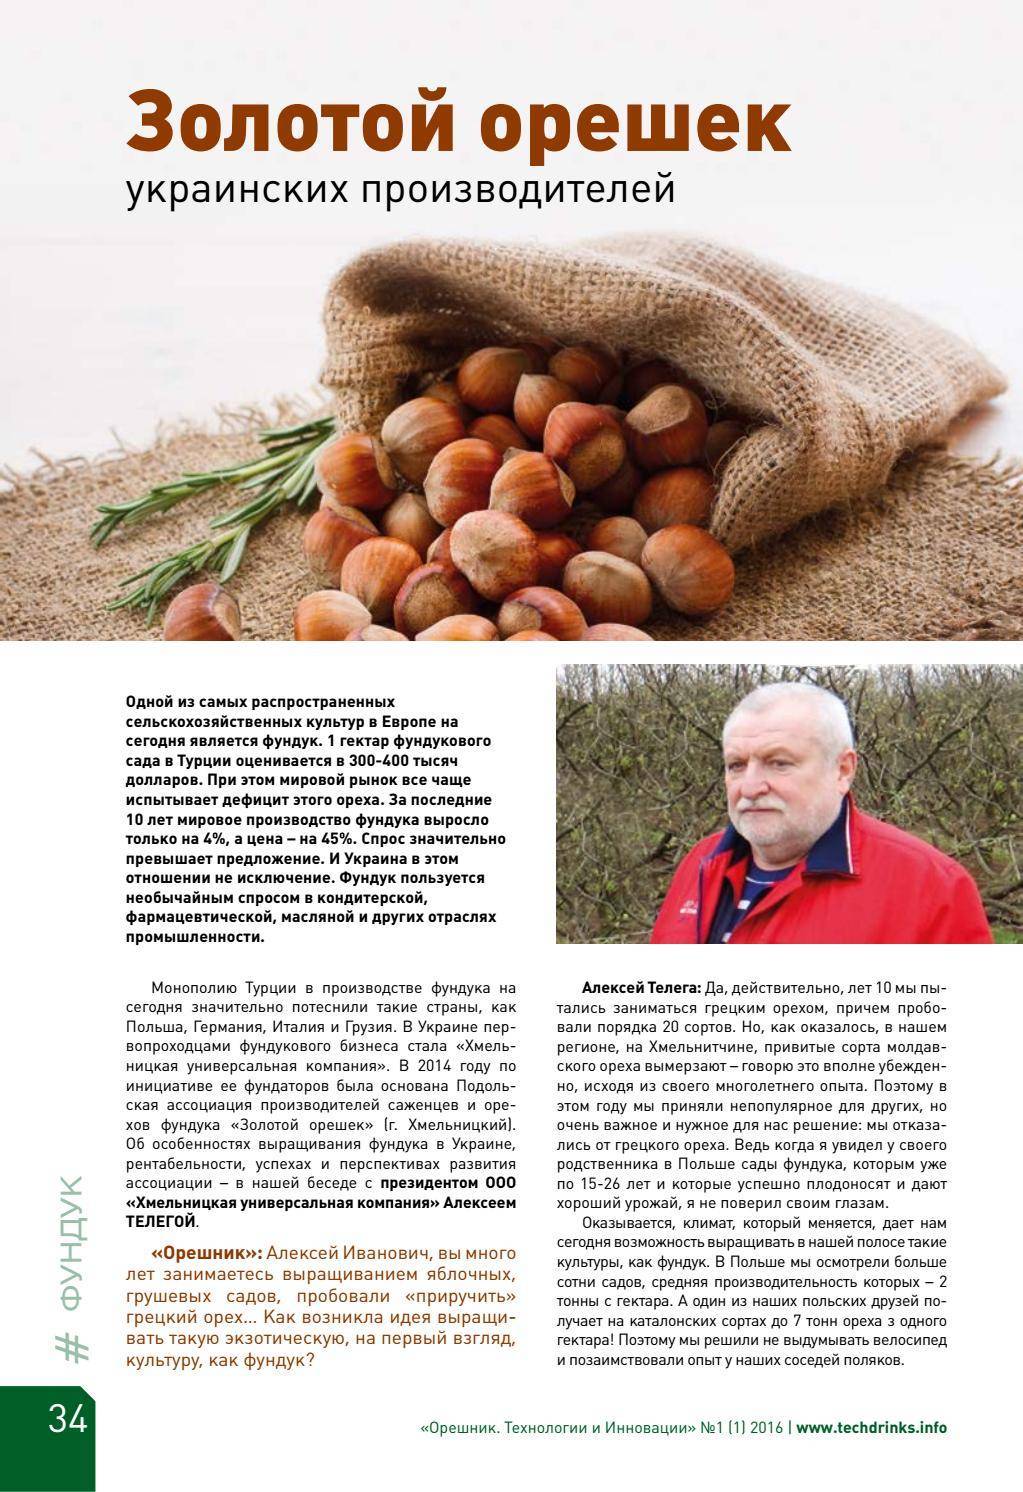 Бизнес на орехах украина – как и сколько можно заработать на выращивании грецкого ореха